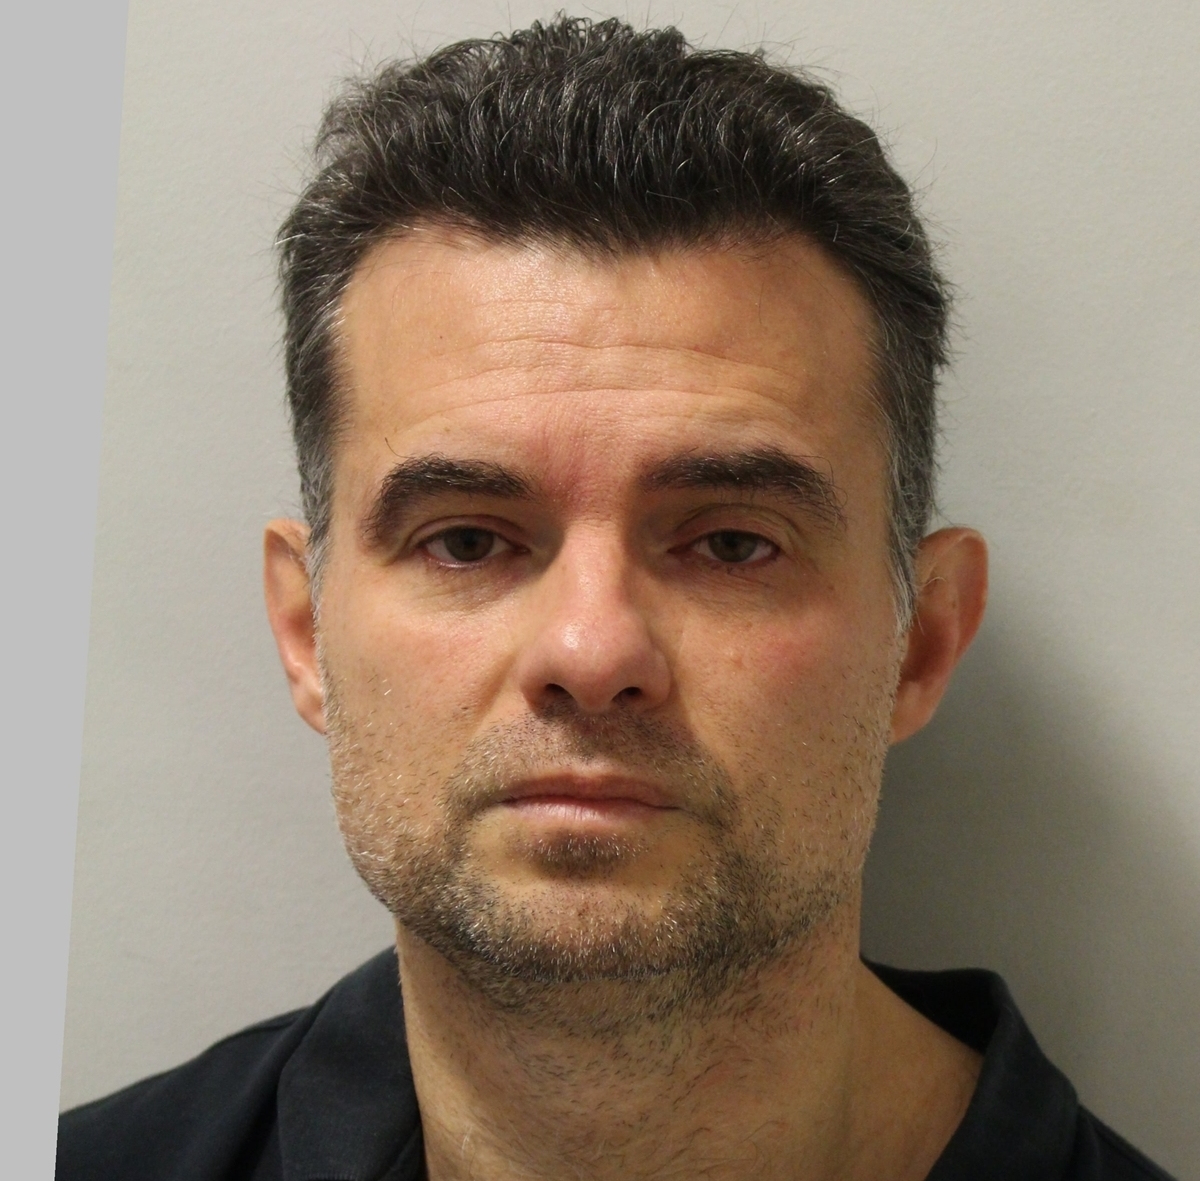 Българин осъден в Лондон - отивал за масаж, но посягал сексуално